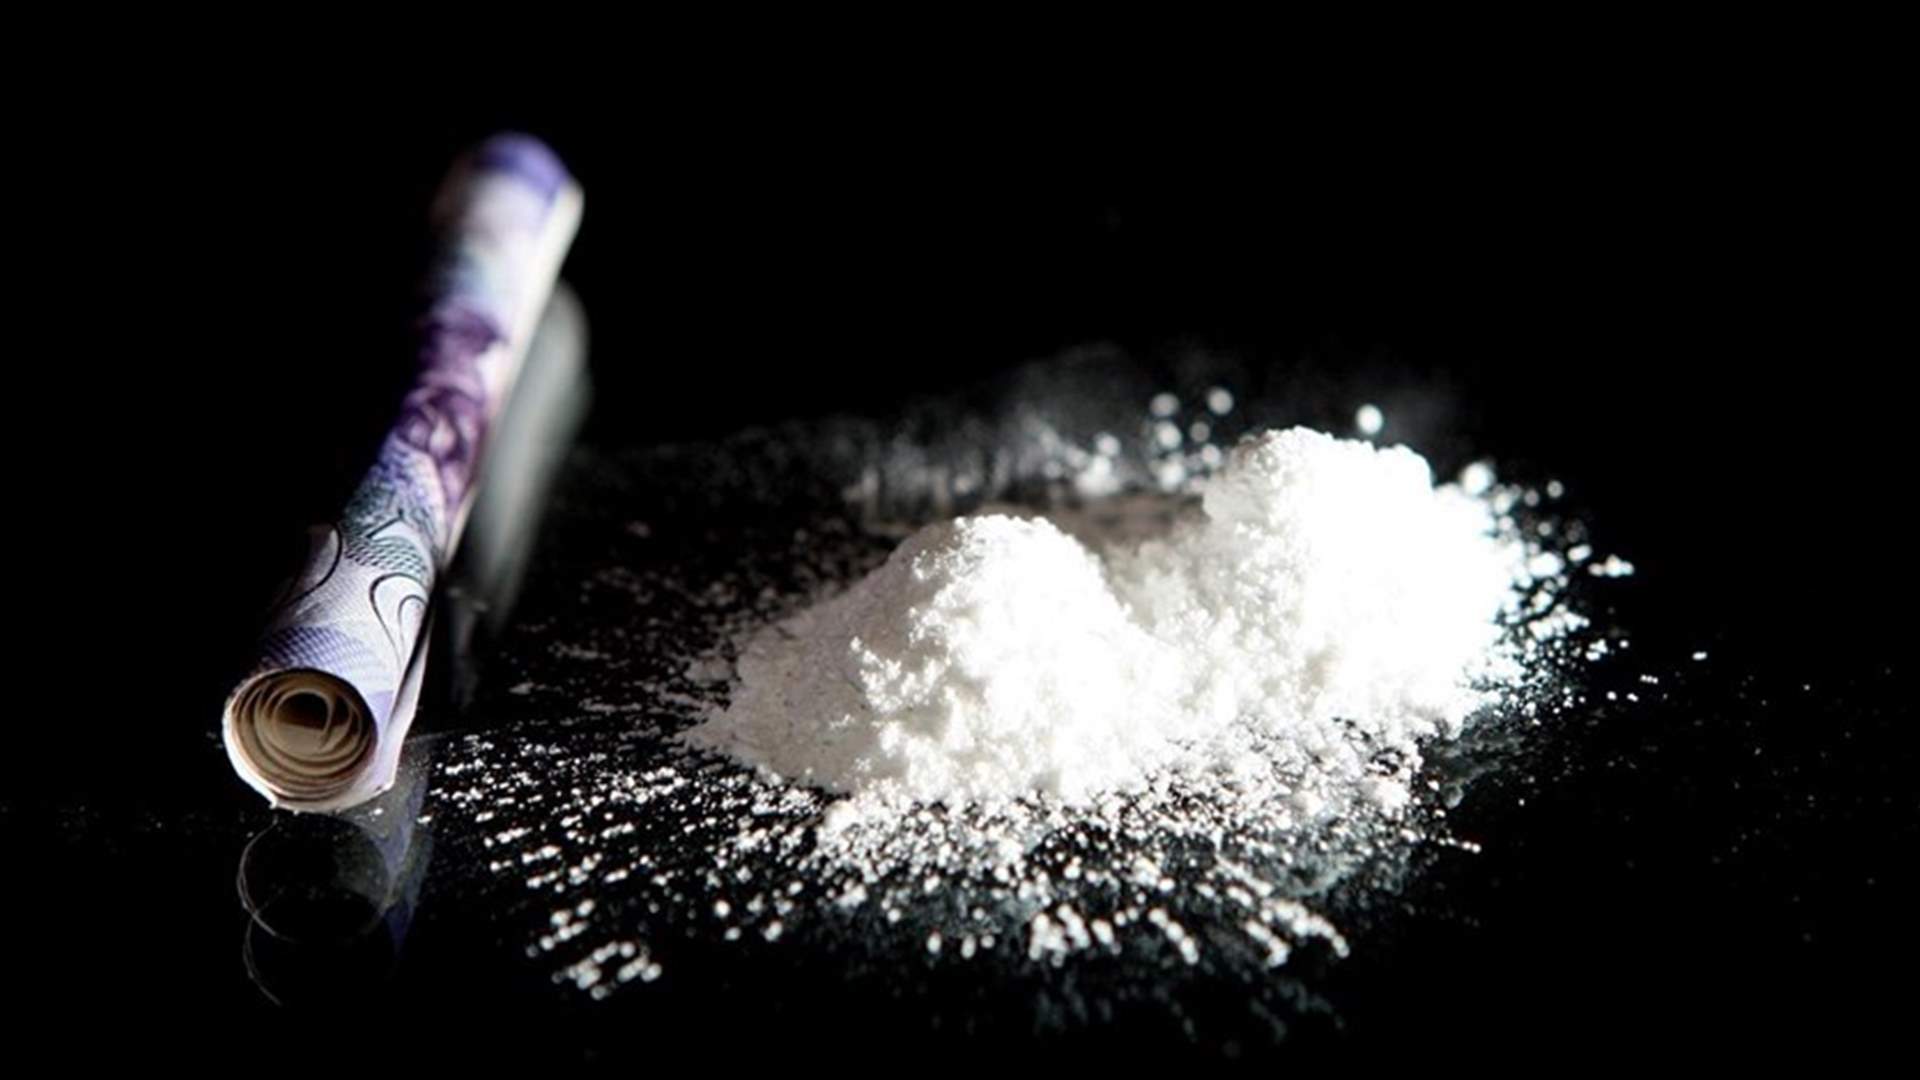 كيف تؤثر الكوكايين على الإنسان؟ Lebanon News